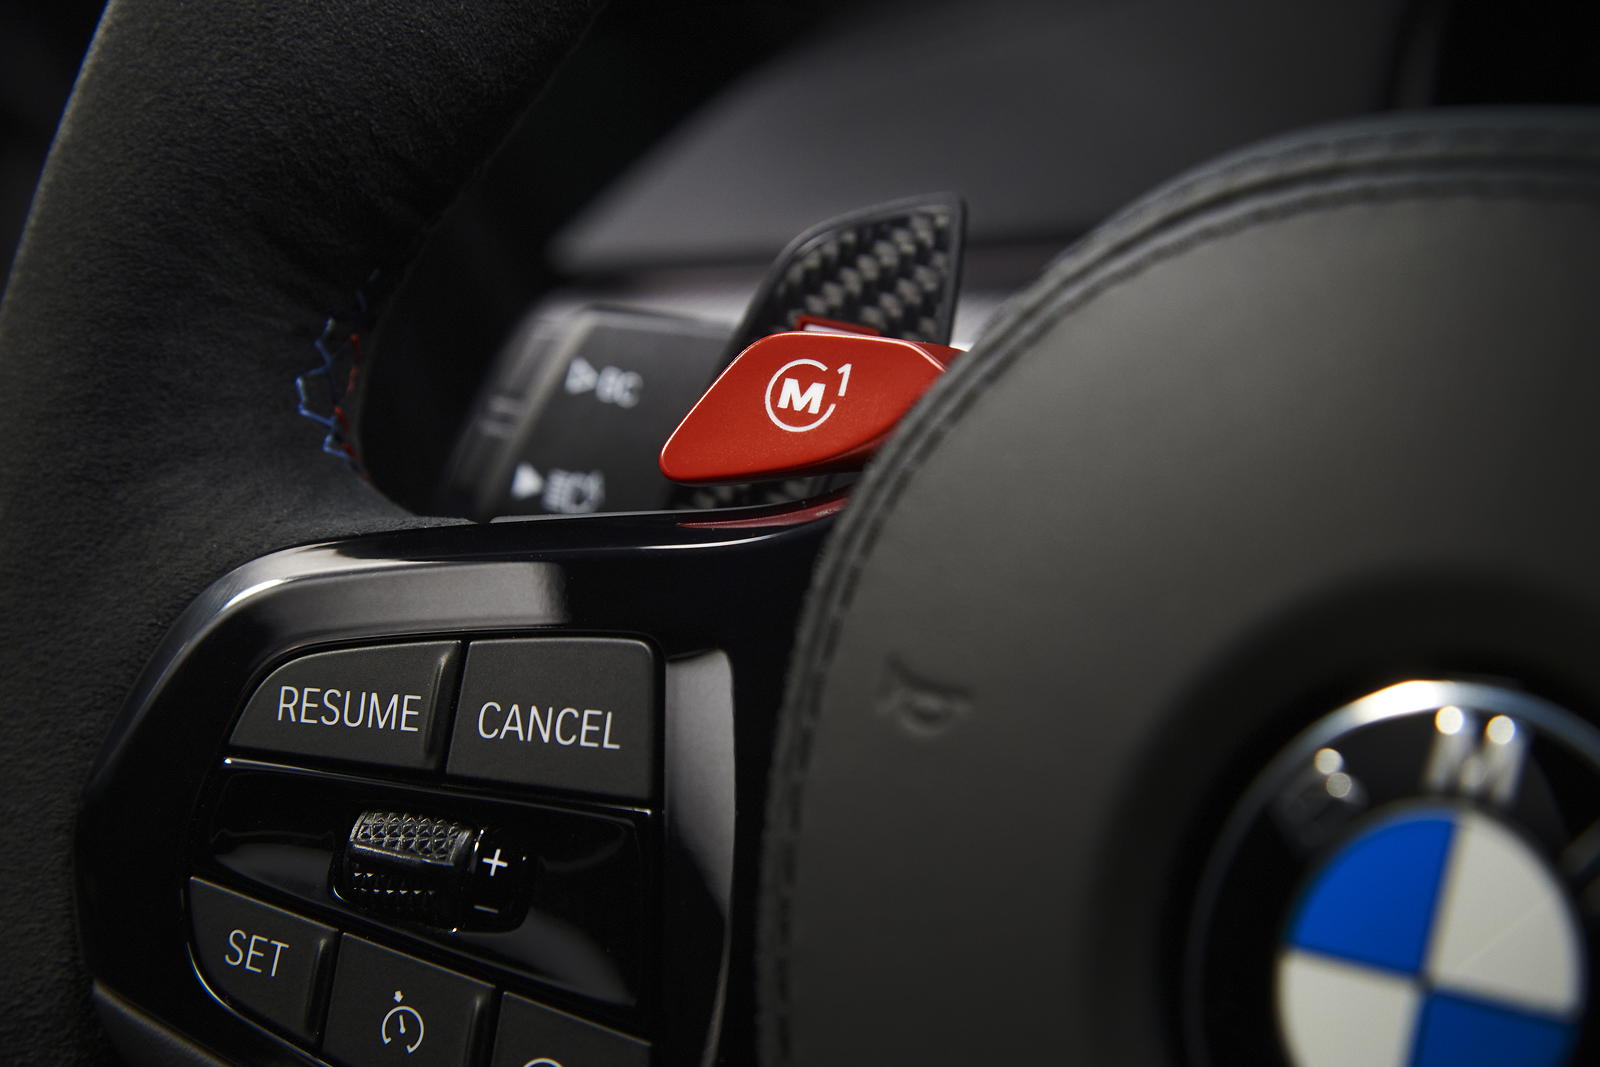 Foto: BMW M5 CS mit roten, prgrammierbaren M-Tasten am Lenkrad